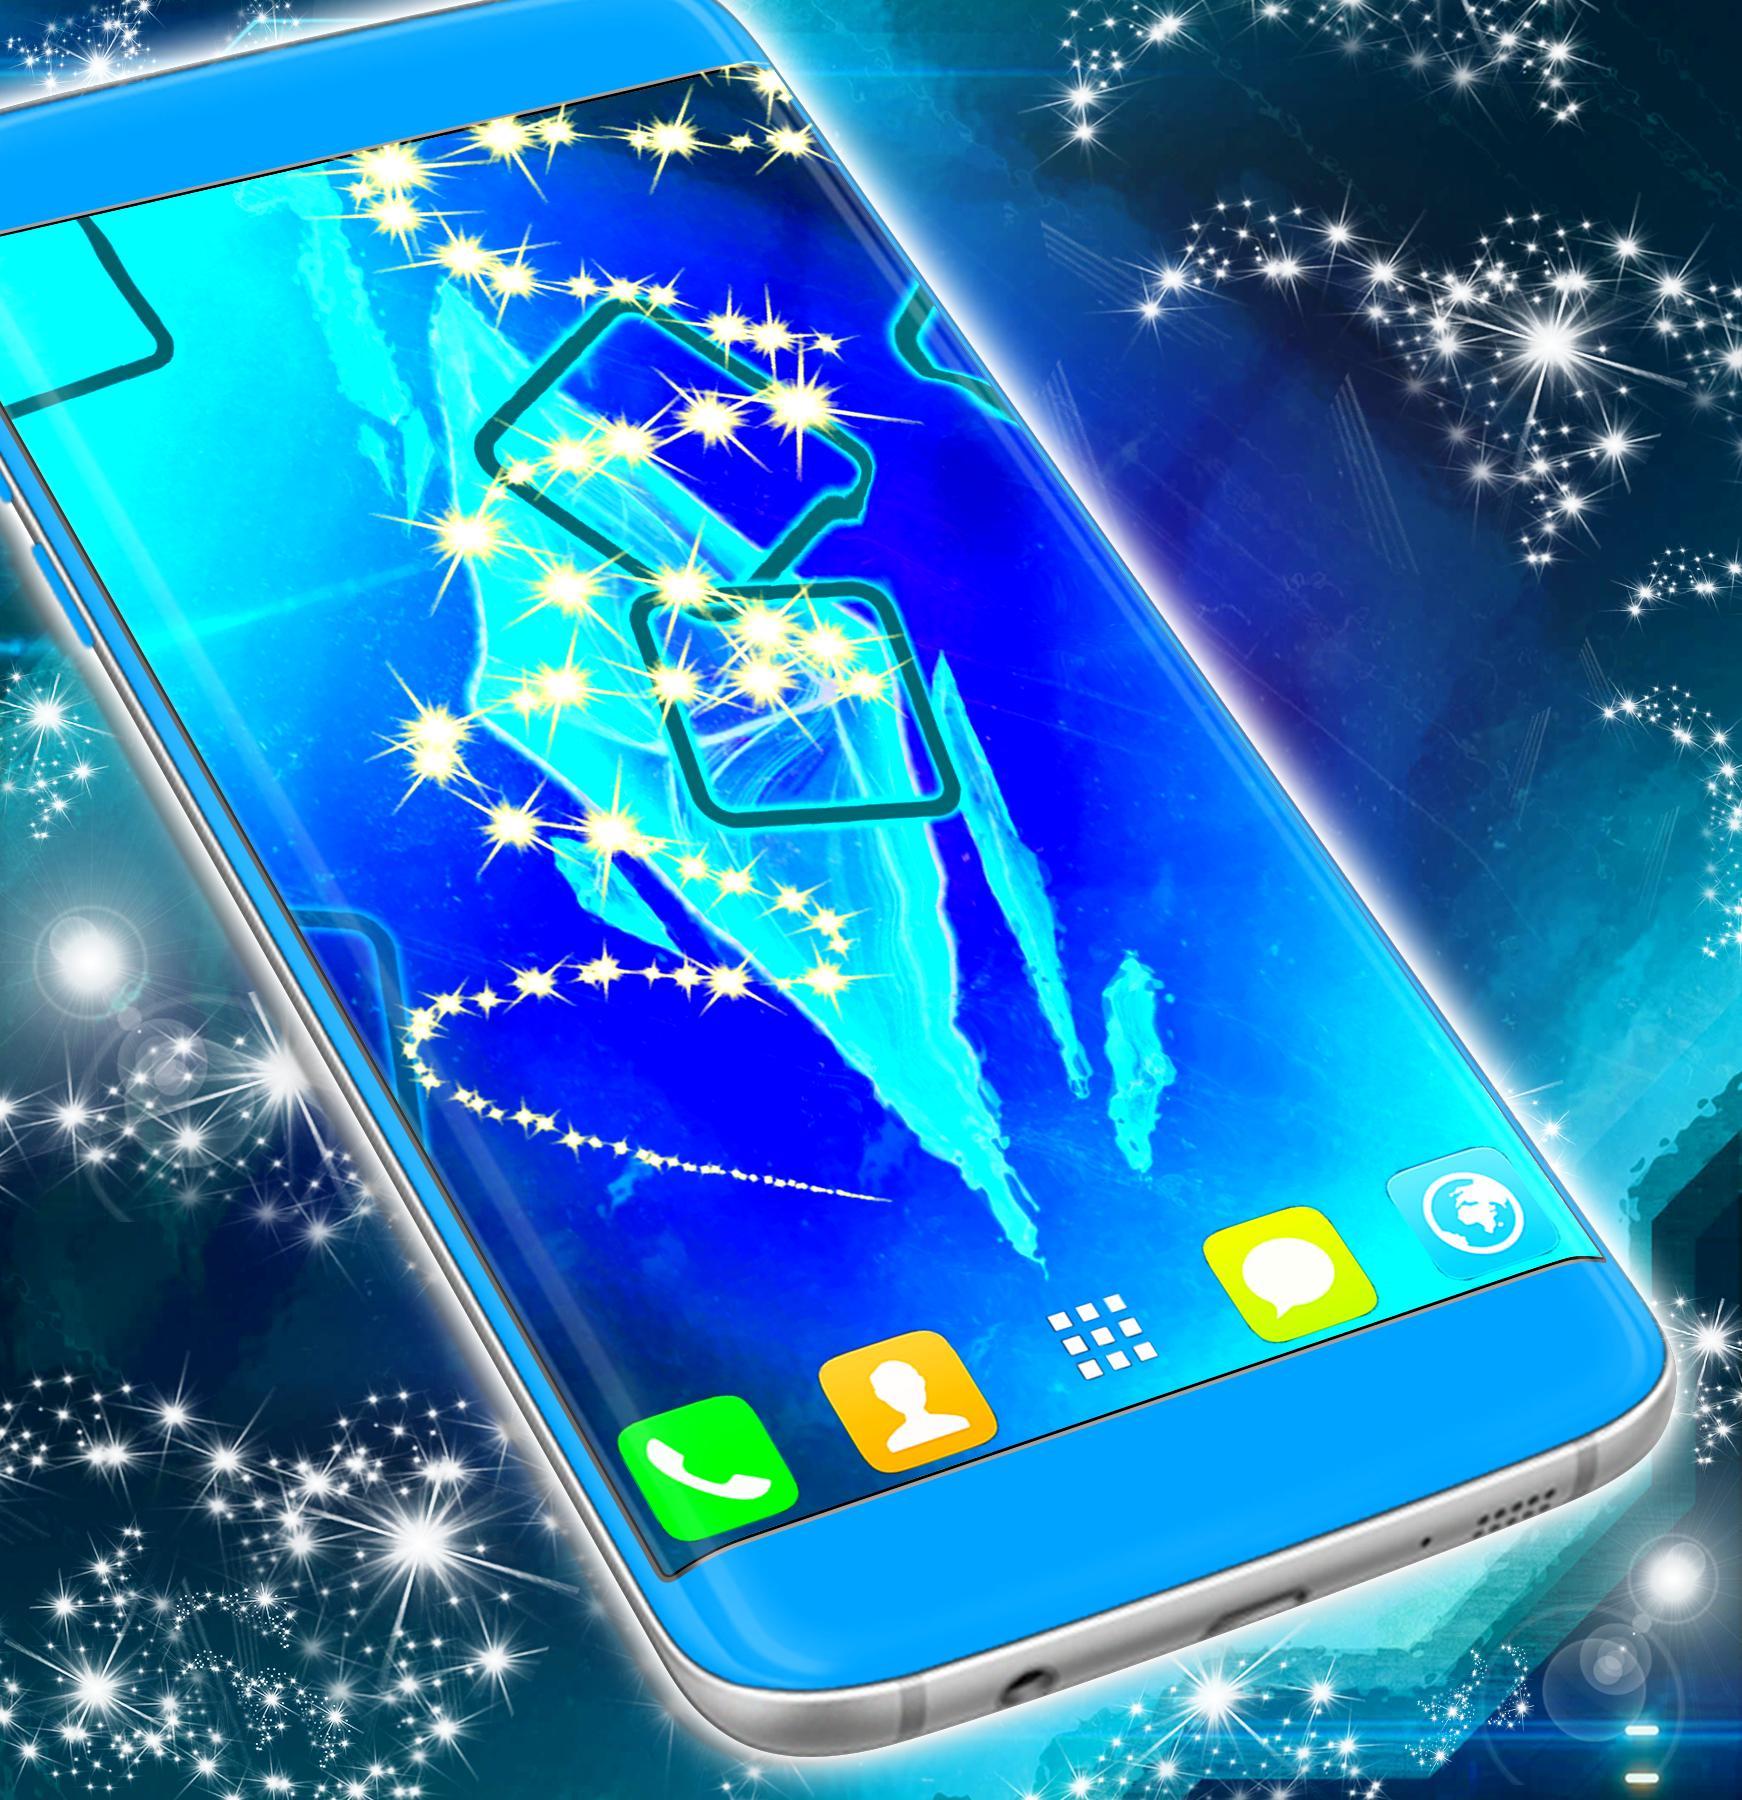 APK Live Wallpaper cho Samsung Galaxy J7 Prime của chúng tôi sẽ khiến bạn trầm trồ vì chất lượng và độc đáo. Hình nền đầy tính năng sẽ mang đến trải nghiệm mới cho màn hình điện thoại của bạn. Hãy download và khám phá ngay để tận hưởng điều tuyệt vời nhất mà chúng tôi mang lại.